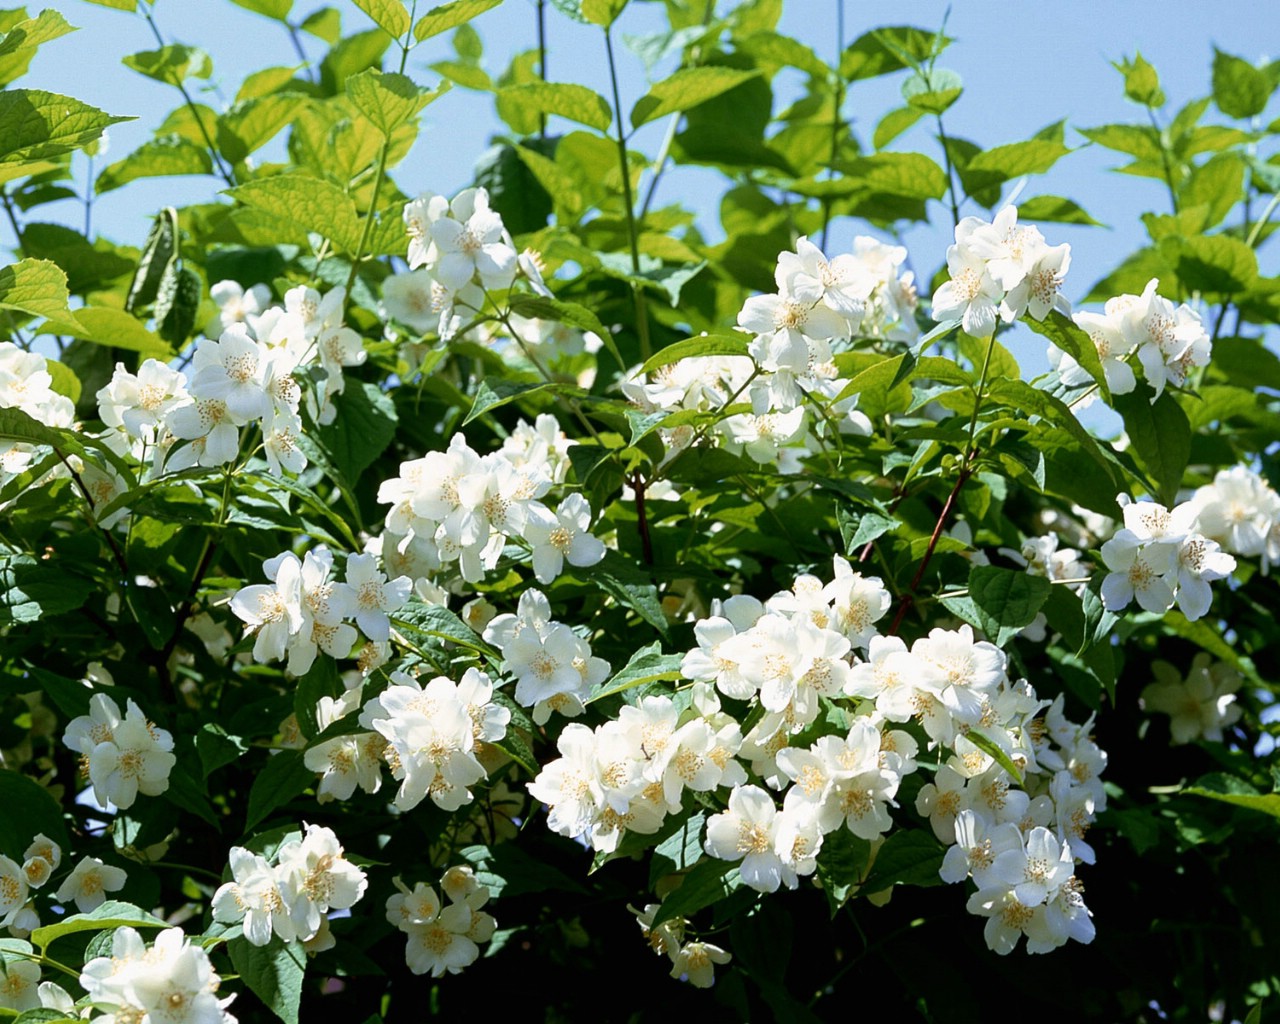 壁纸1280x1024白色花朵壁纸壁纸 白色花朵壁纸壁纸 白色花朵壁纸图片 白色花朵壁纸素材 植物壁纸 植物图库 植物图片素材桌面壁纸